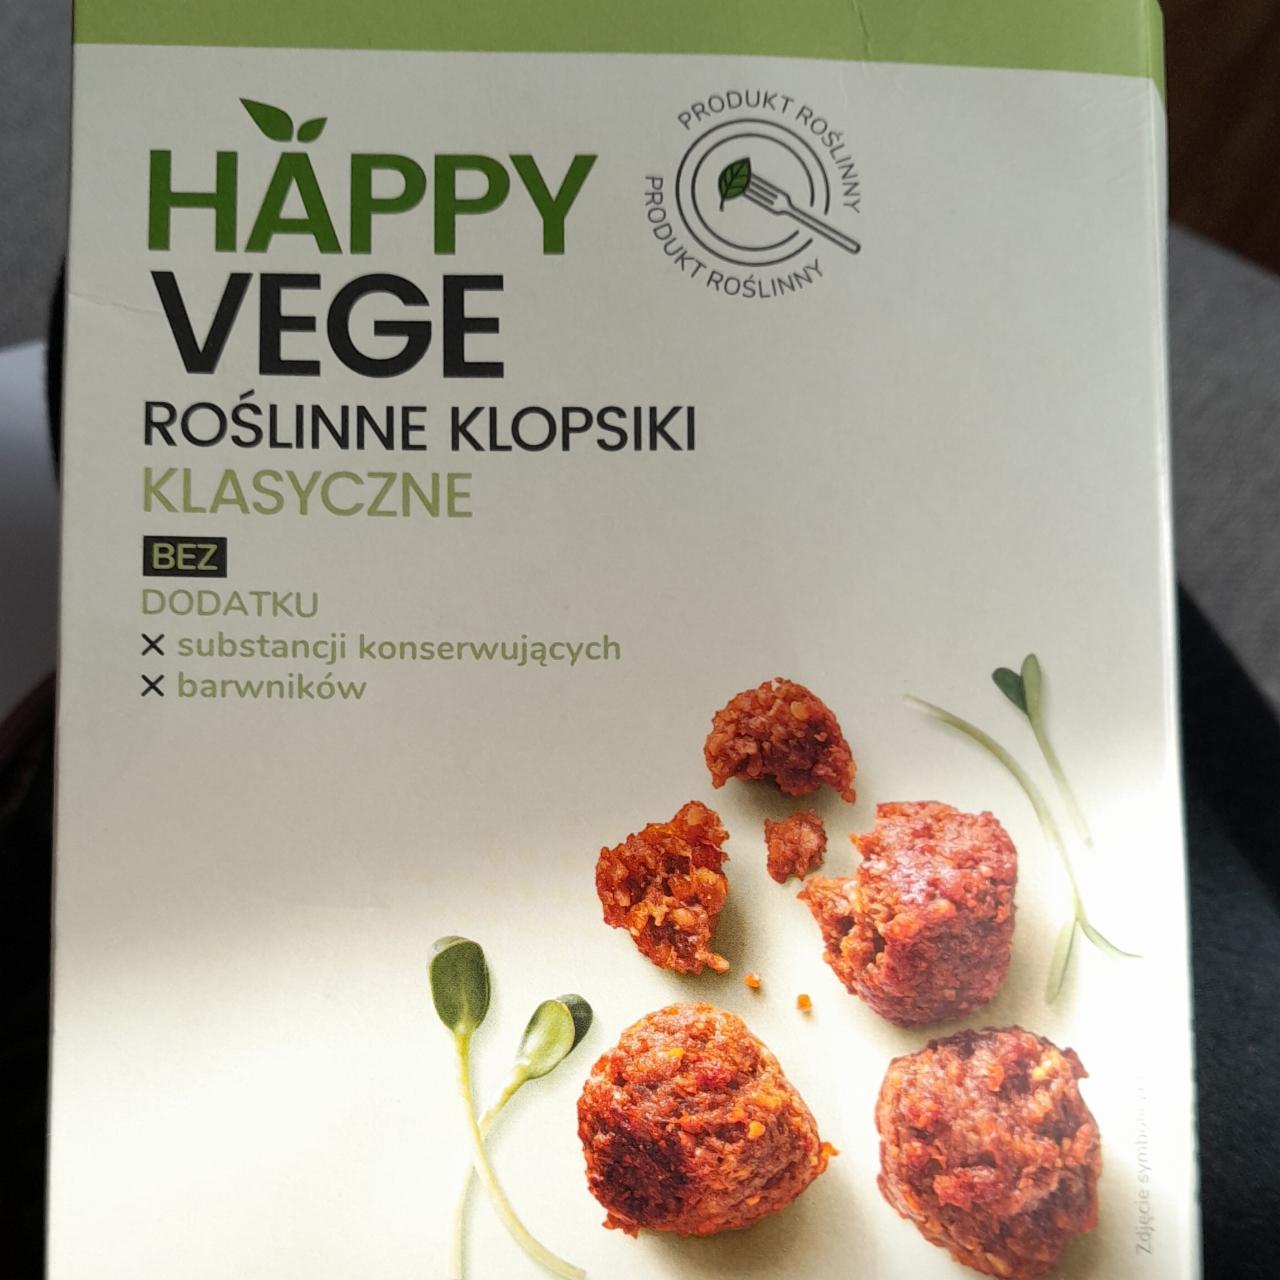 Zdjęcia - Roślinne klopsiki klasyczne Happy Vege